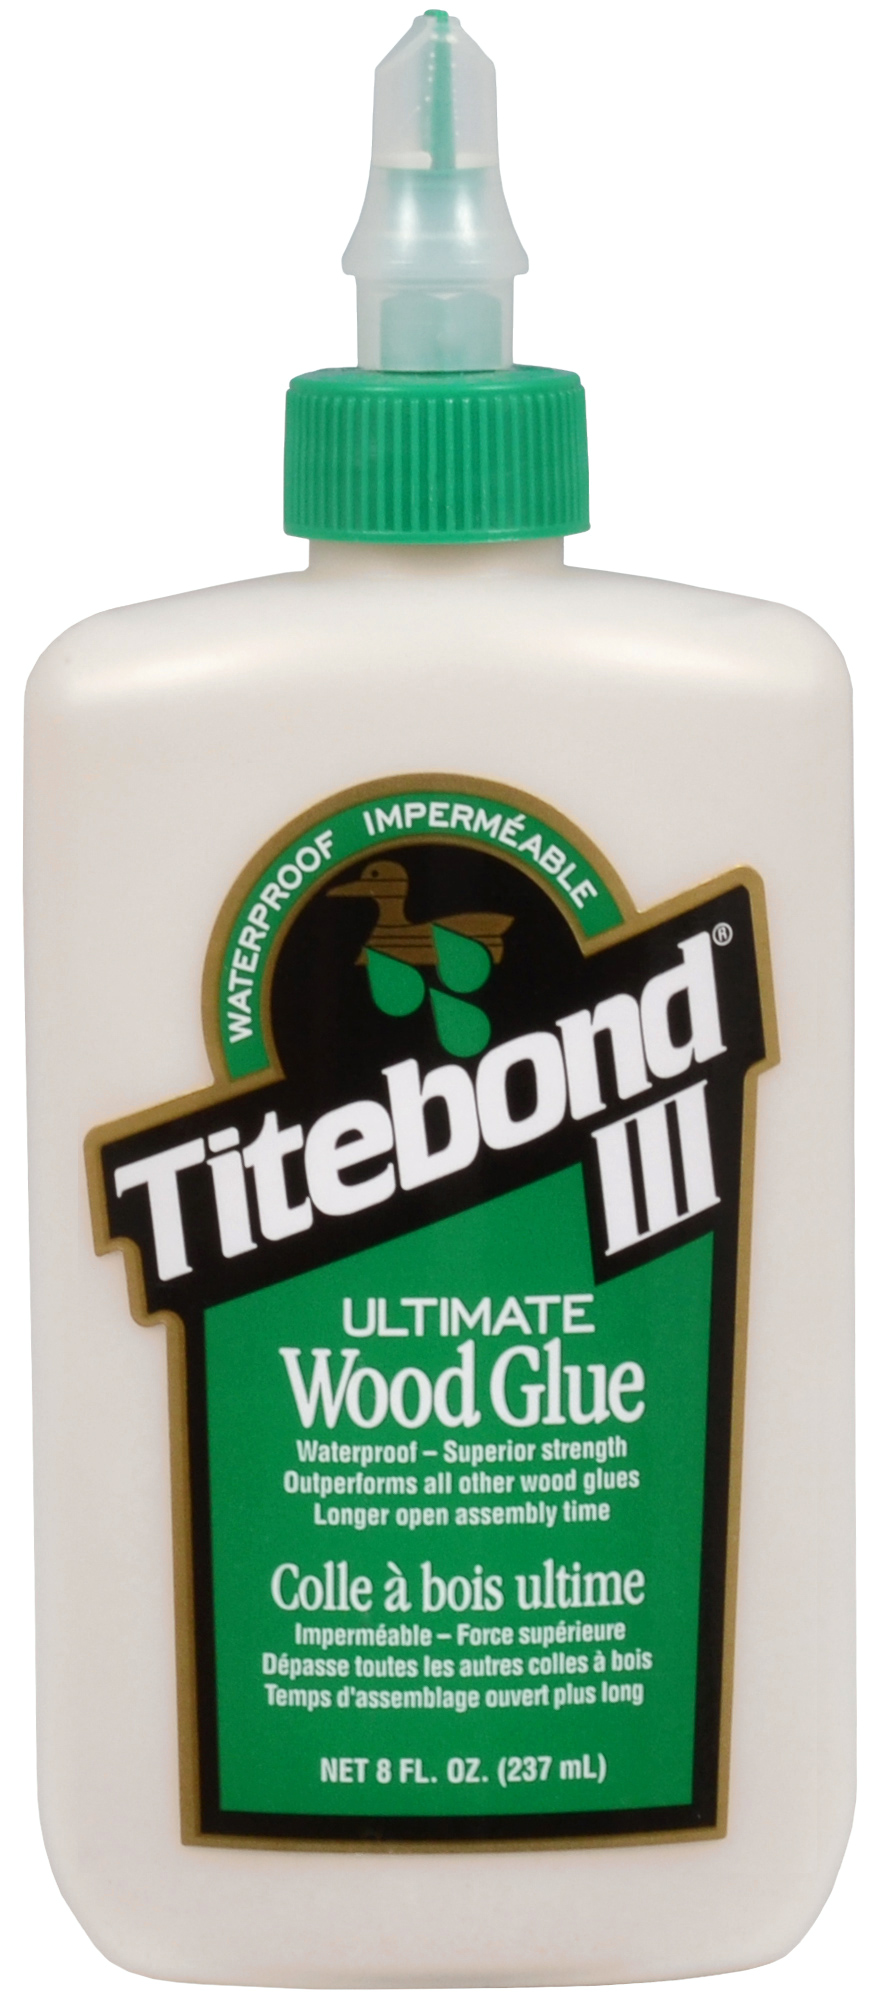 Titebond III - Colle à bois ultime - Titebond - Ardec - Produits pour bois